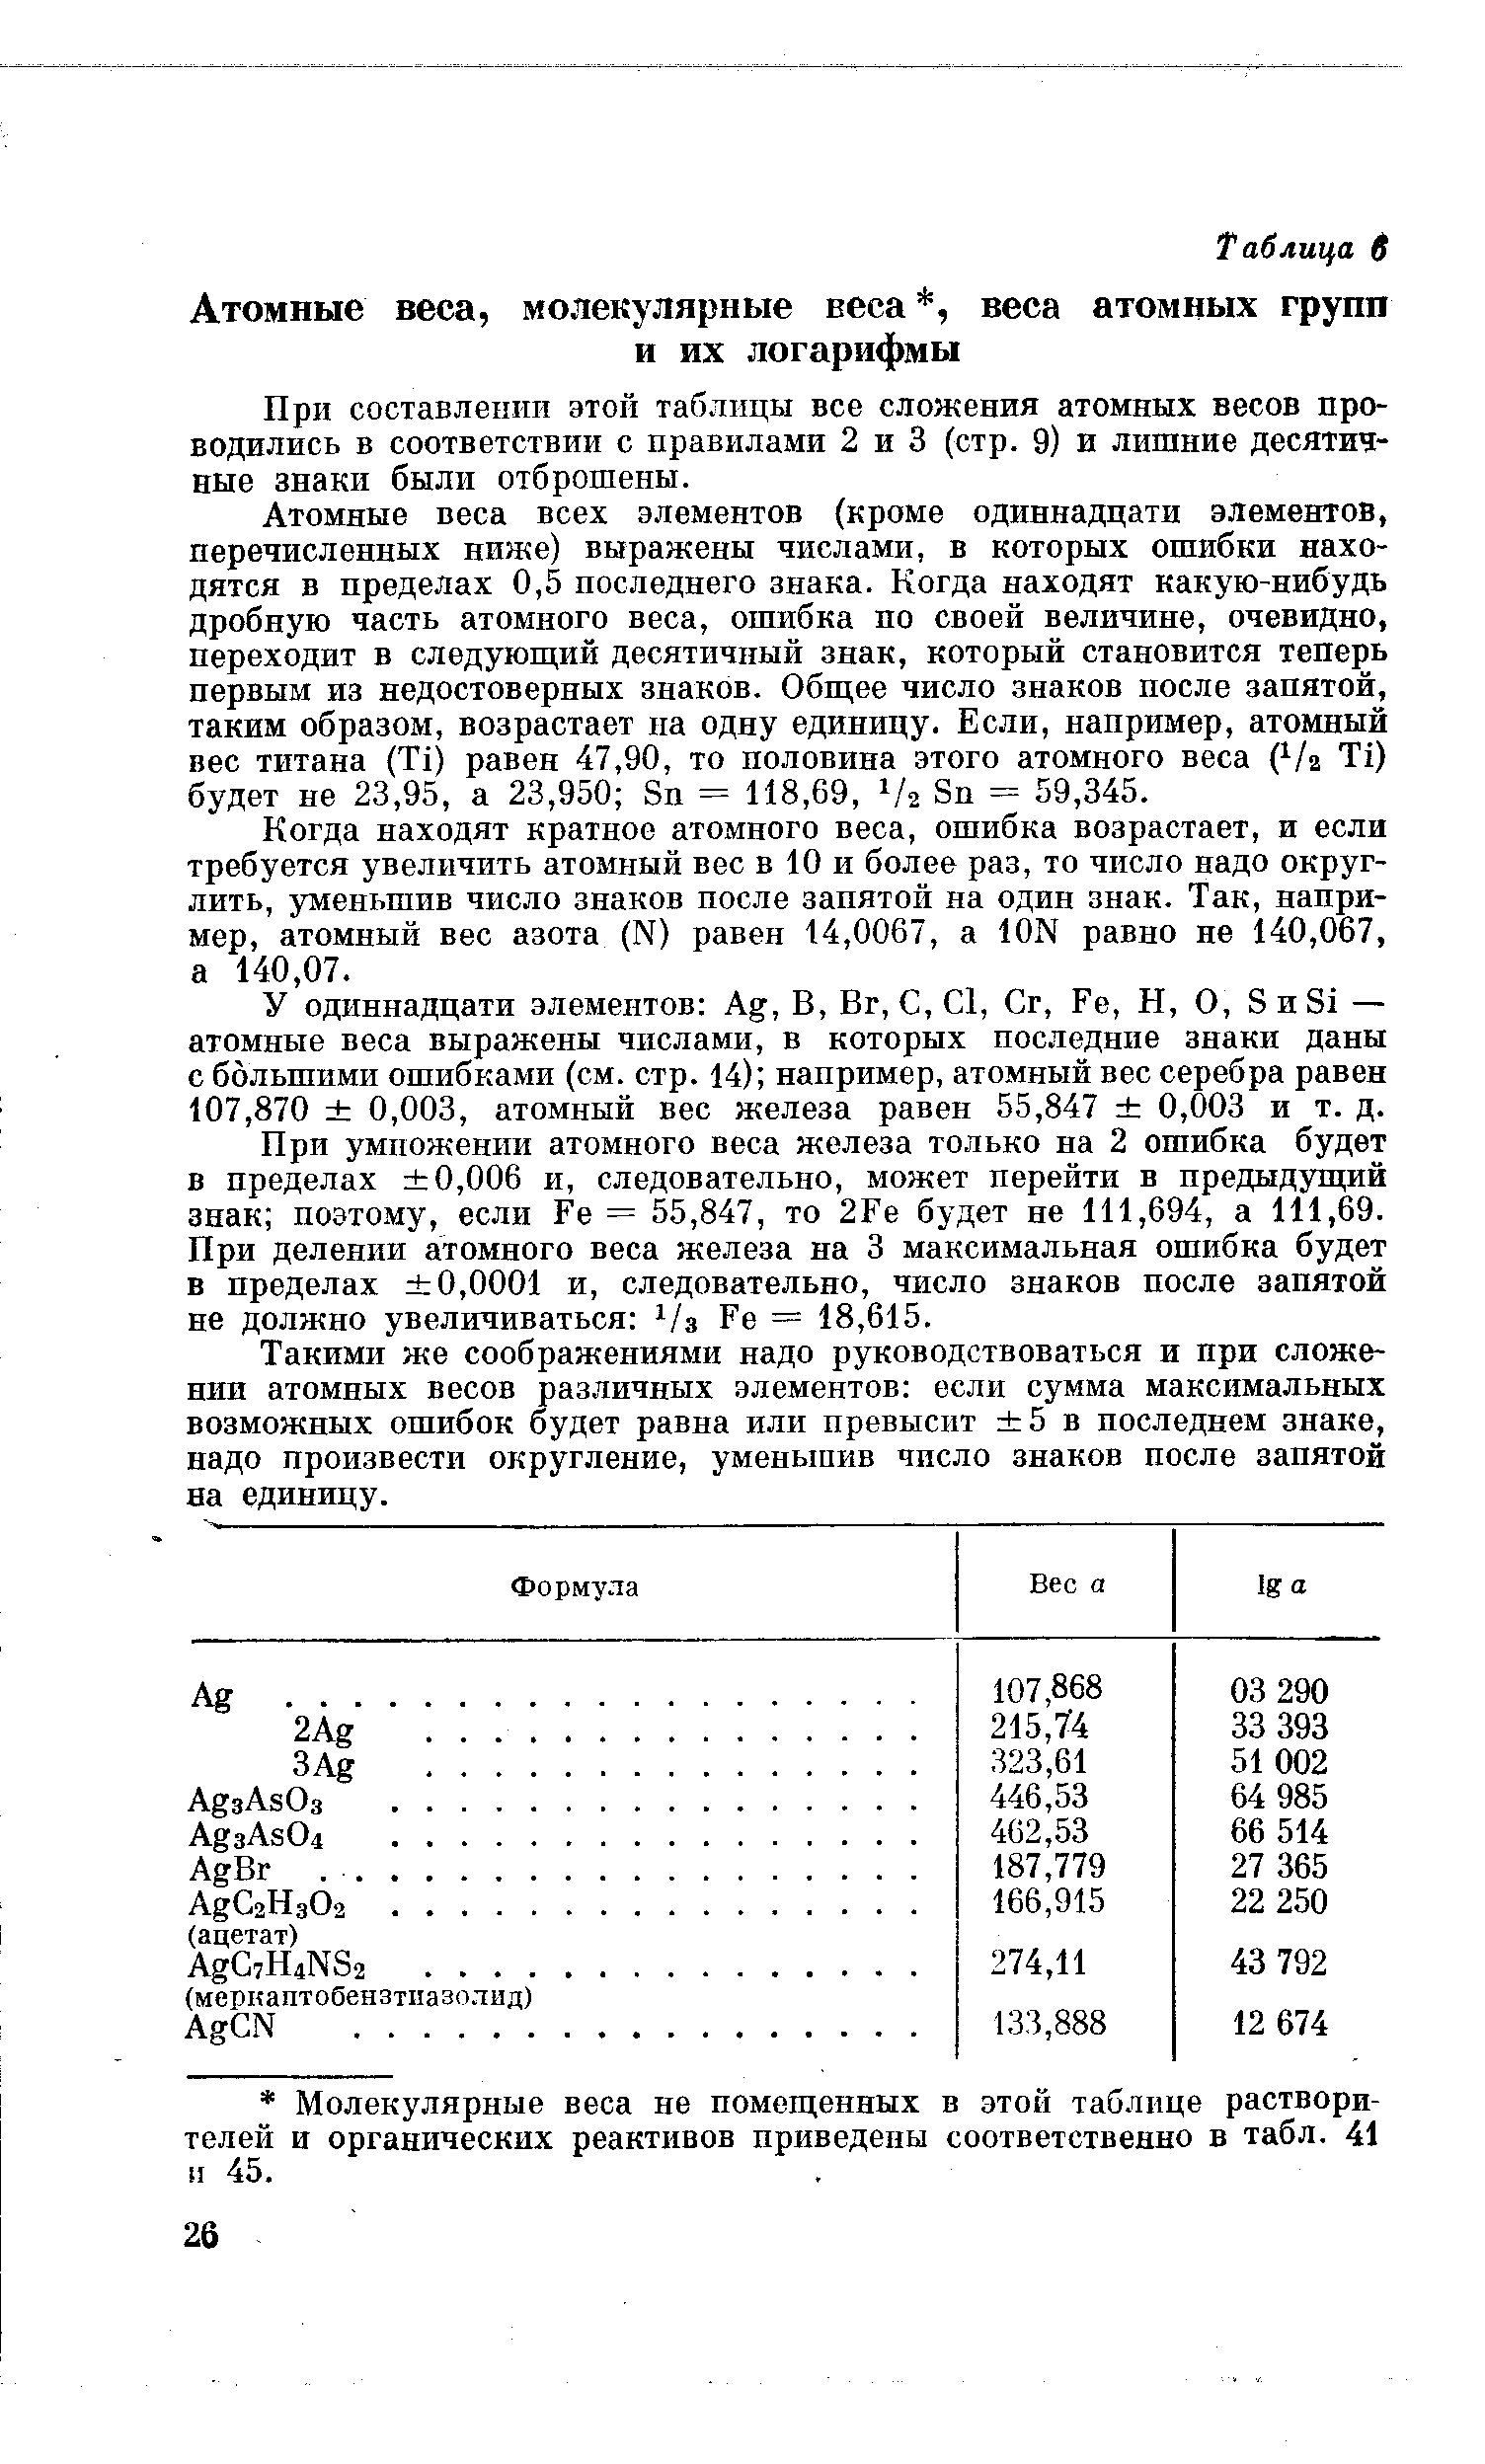 При составлении этой таблицы все сложения атомных весов проводились в соответствии с правилами 2 и 3 (стр. 9) и лишние десятичные знаки были отброшены.